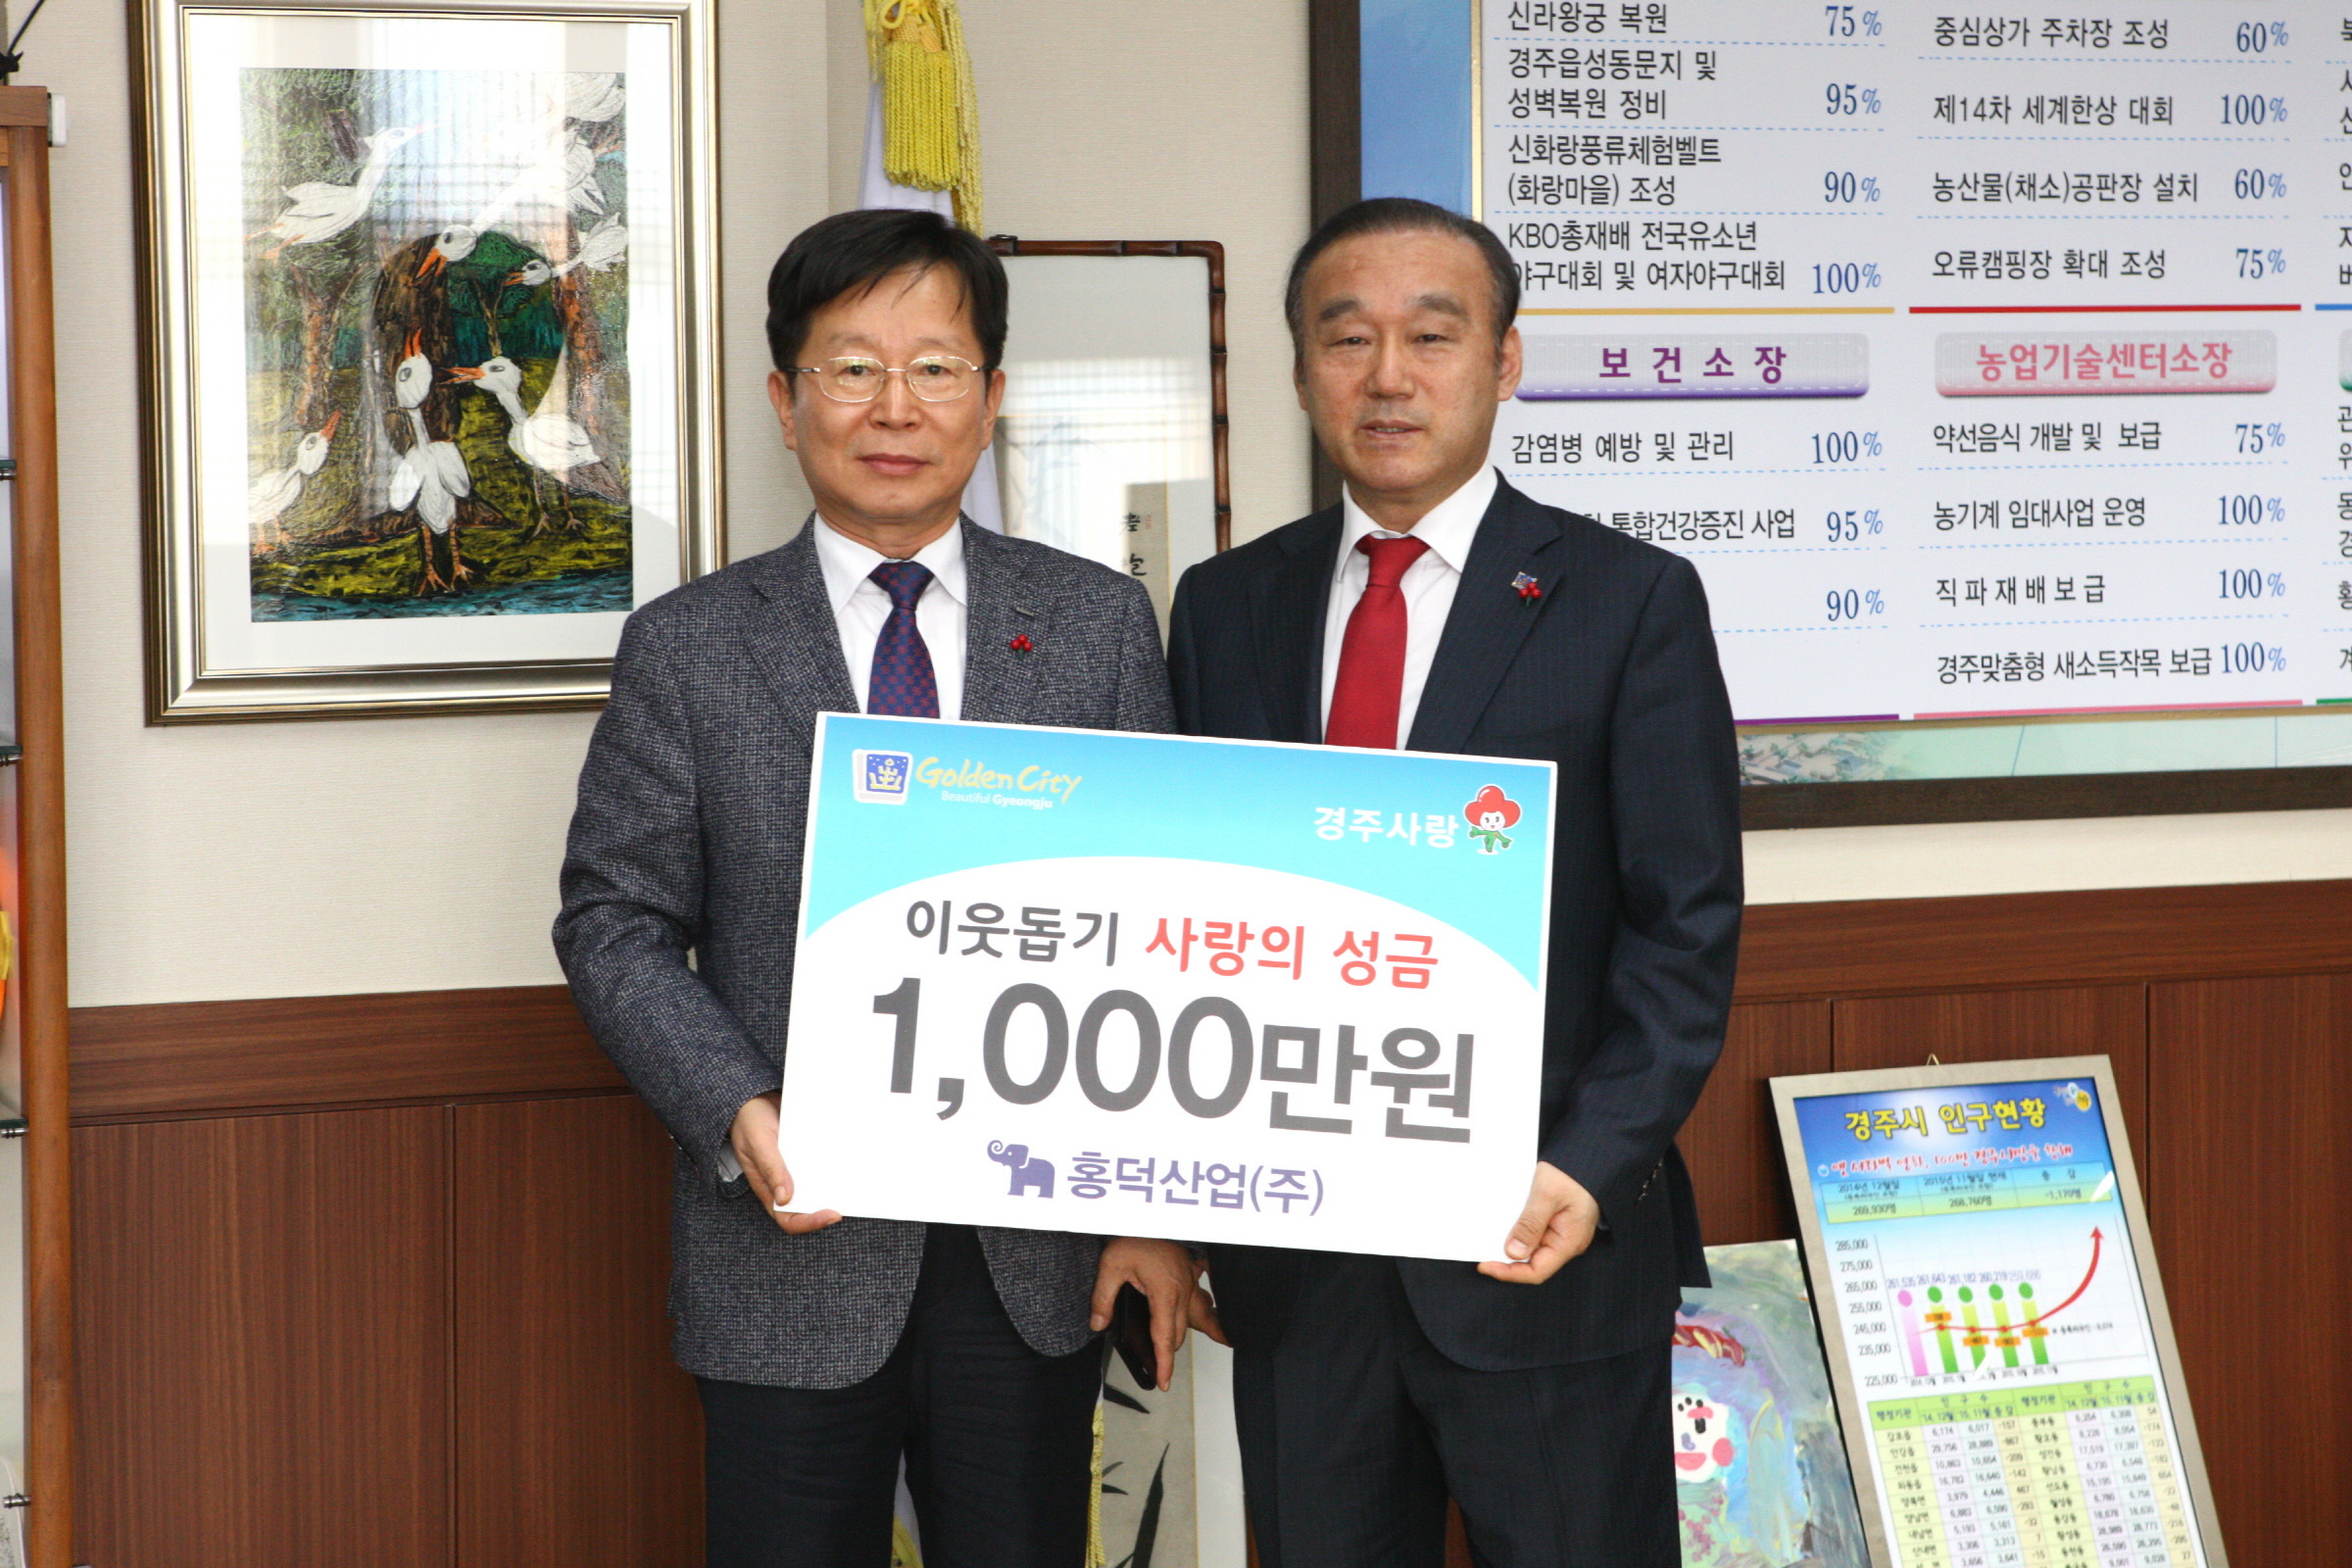 홍덕산업(주), 희망나눔 캠페인에 2천만 원 쾌척